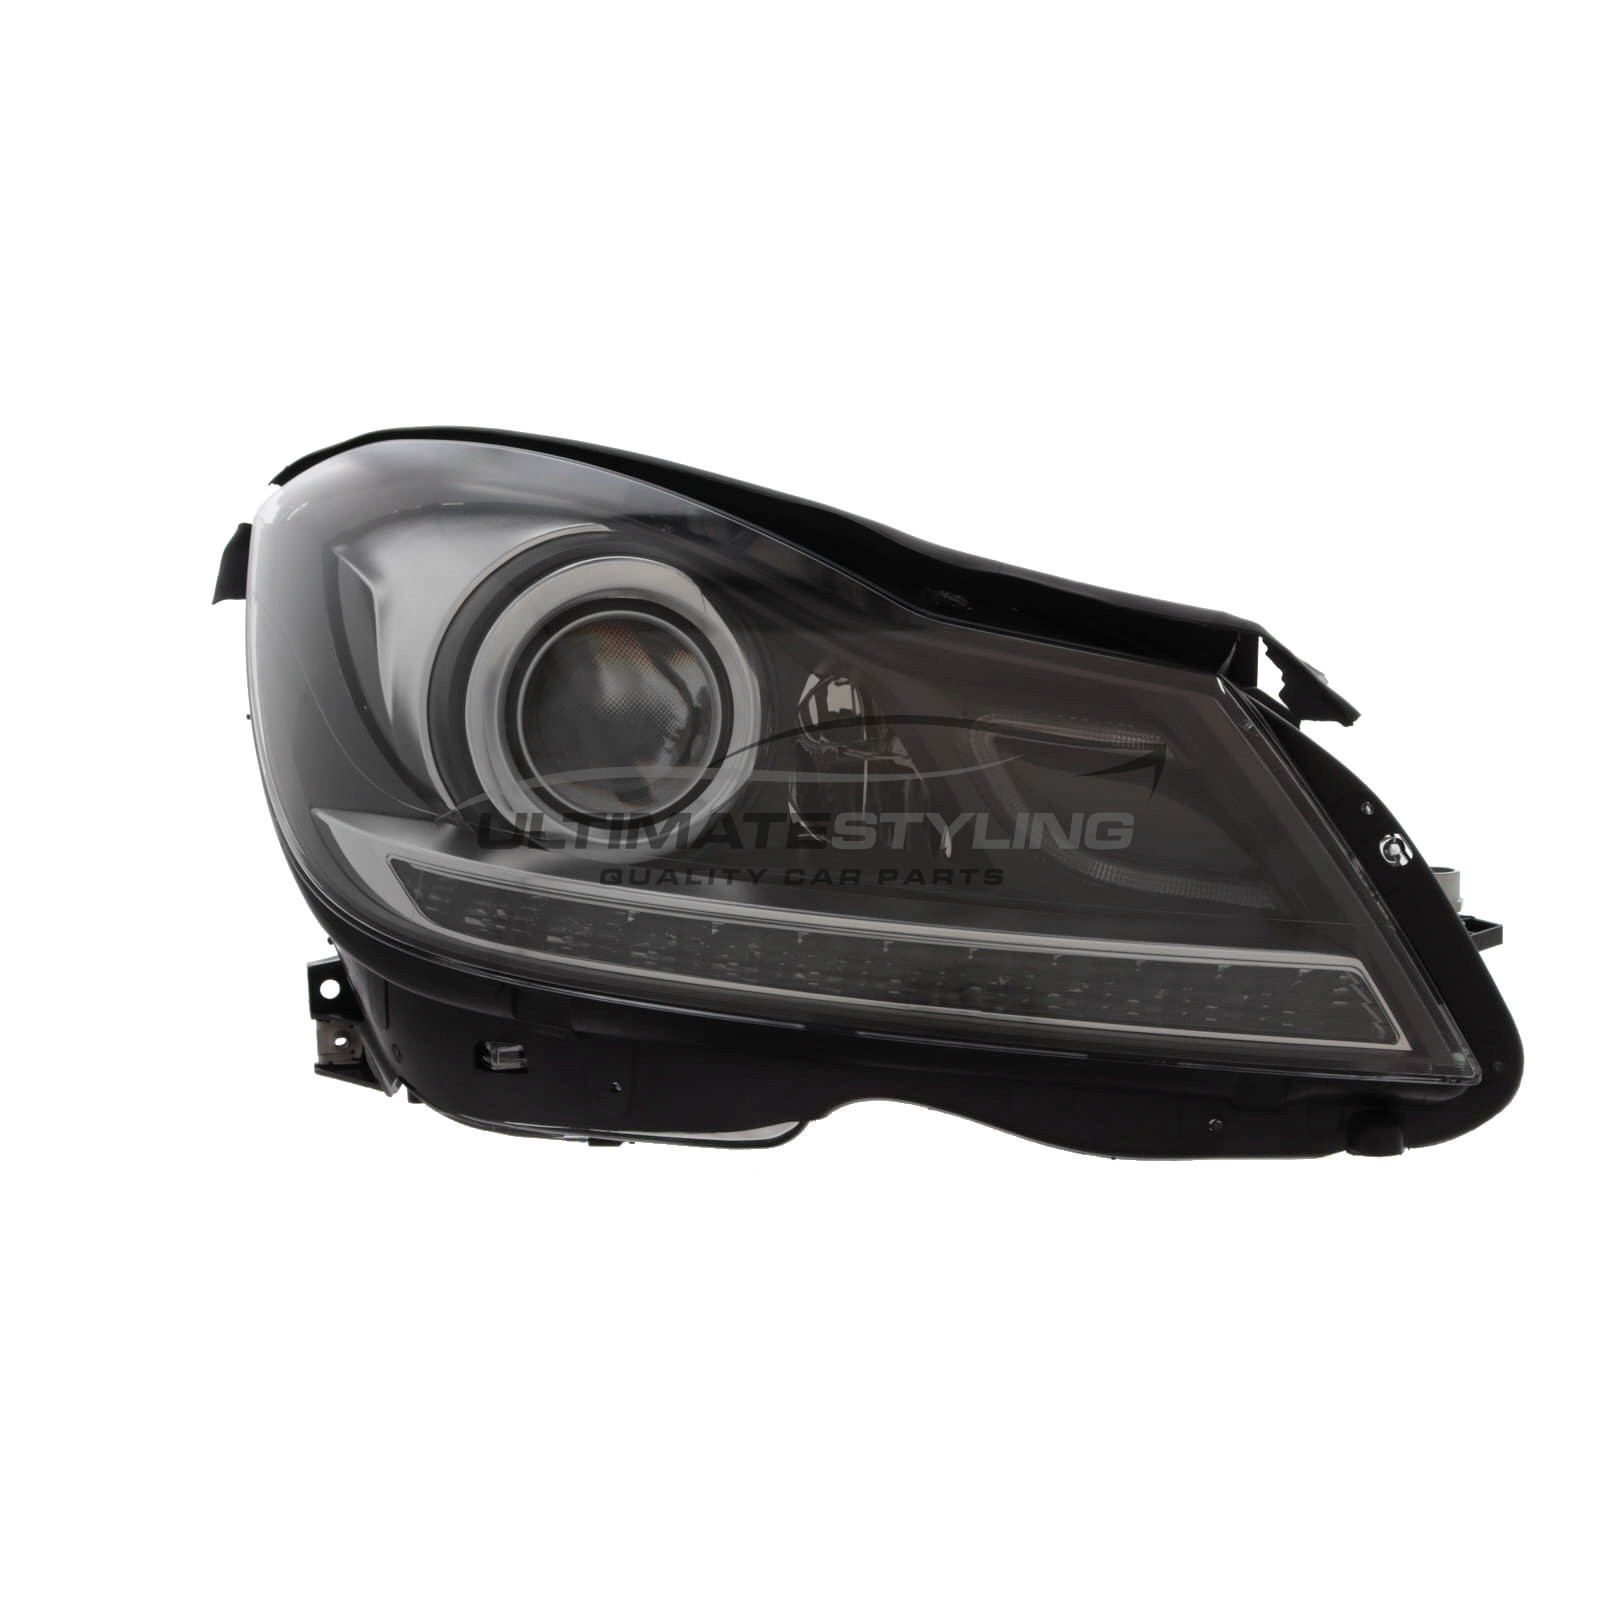 Headlight / Headlamp for Mercedes Benz C Class